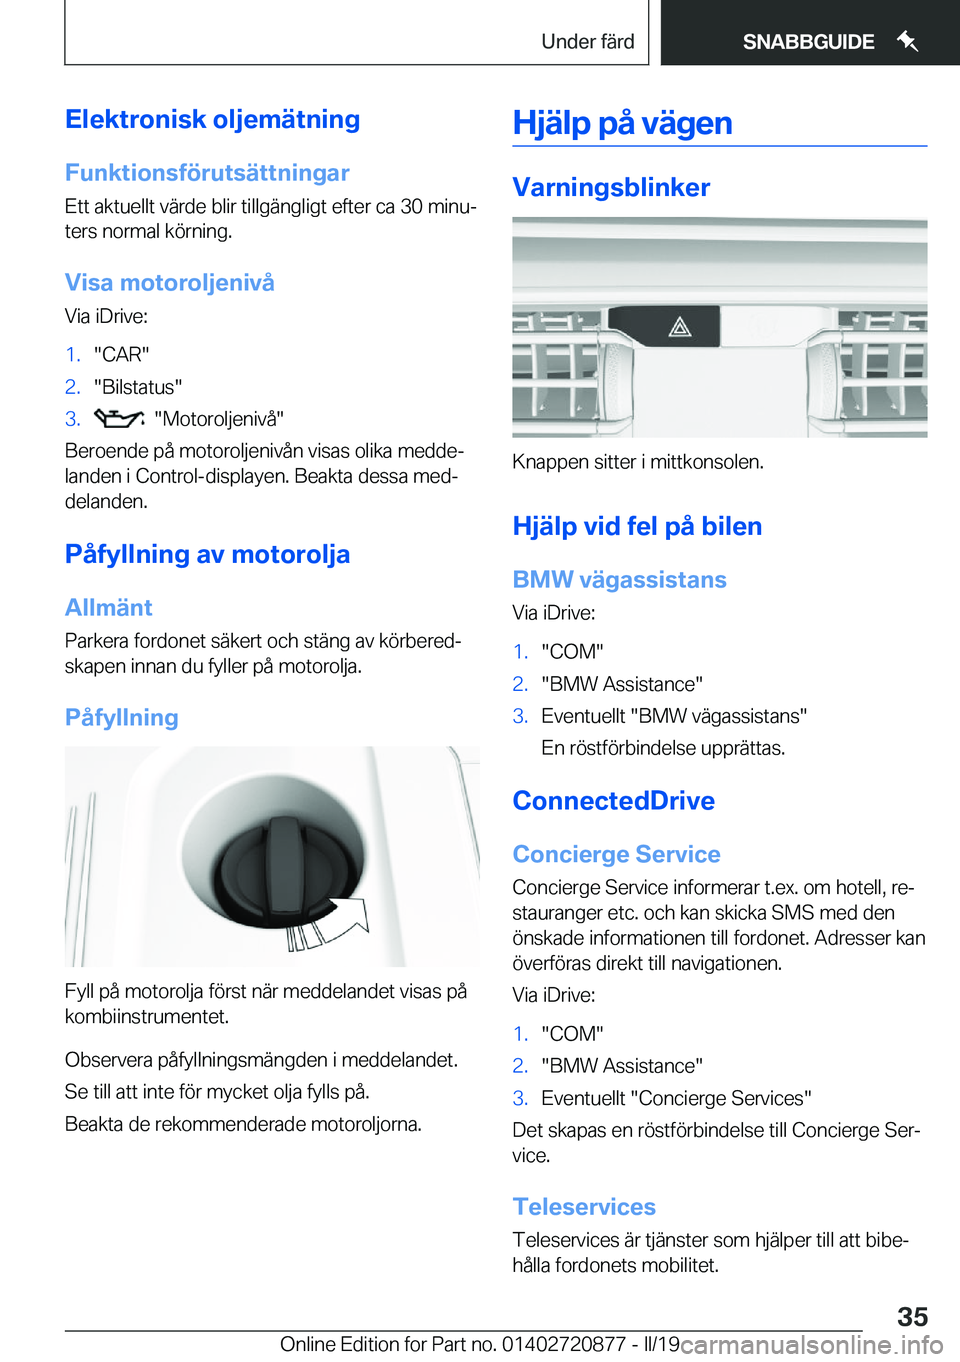 BMW X7 2019  InstruktionsbÖcker (in Swedish) �E�l�e�k�t�r�o�n�i�s�k��o�l�j�e�m�ä�t�n�i�n�g
�F�u�n�k�t�i�o�n�s�f�